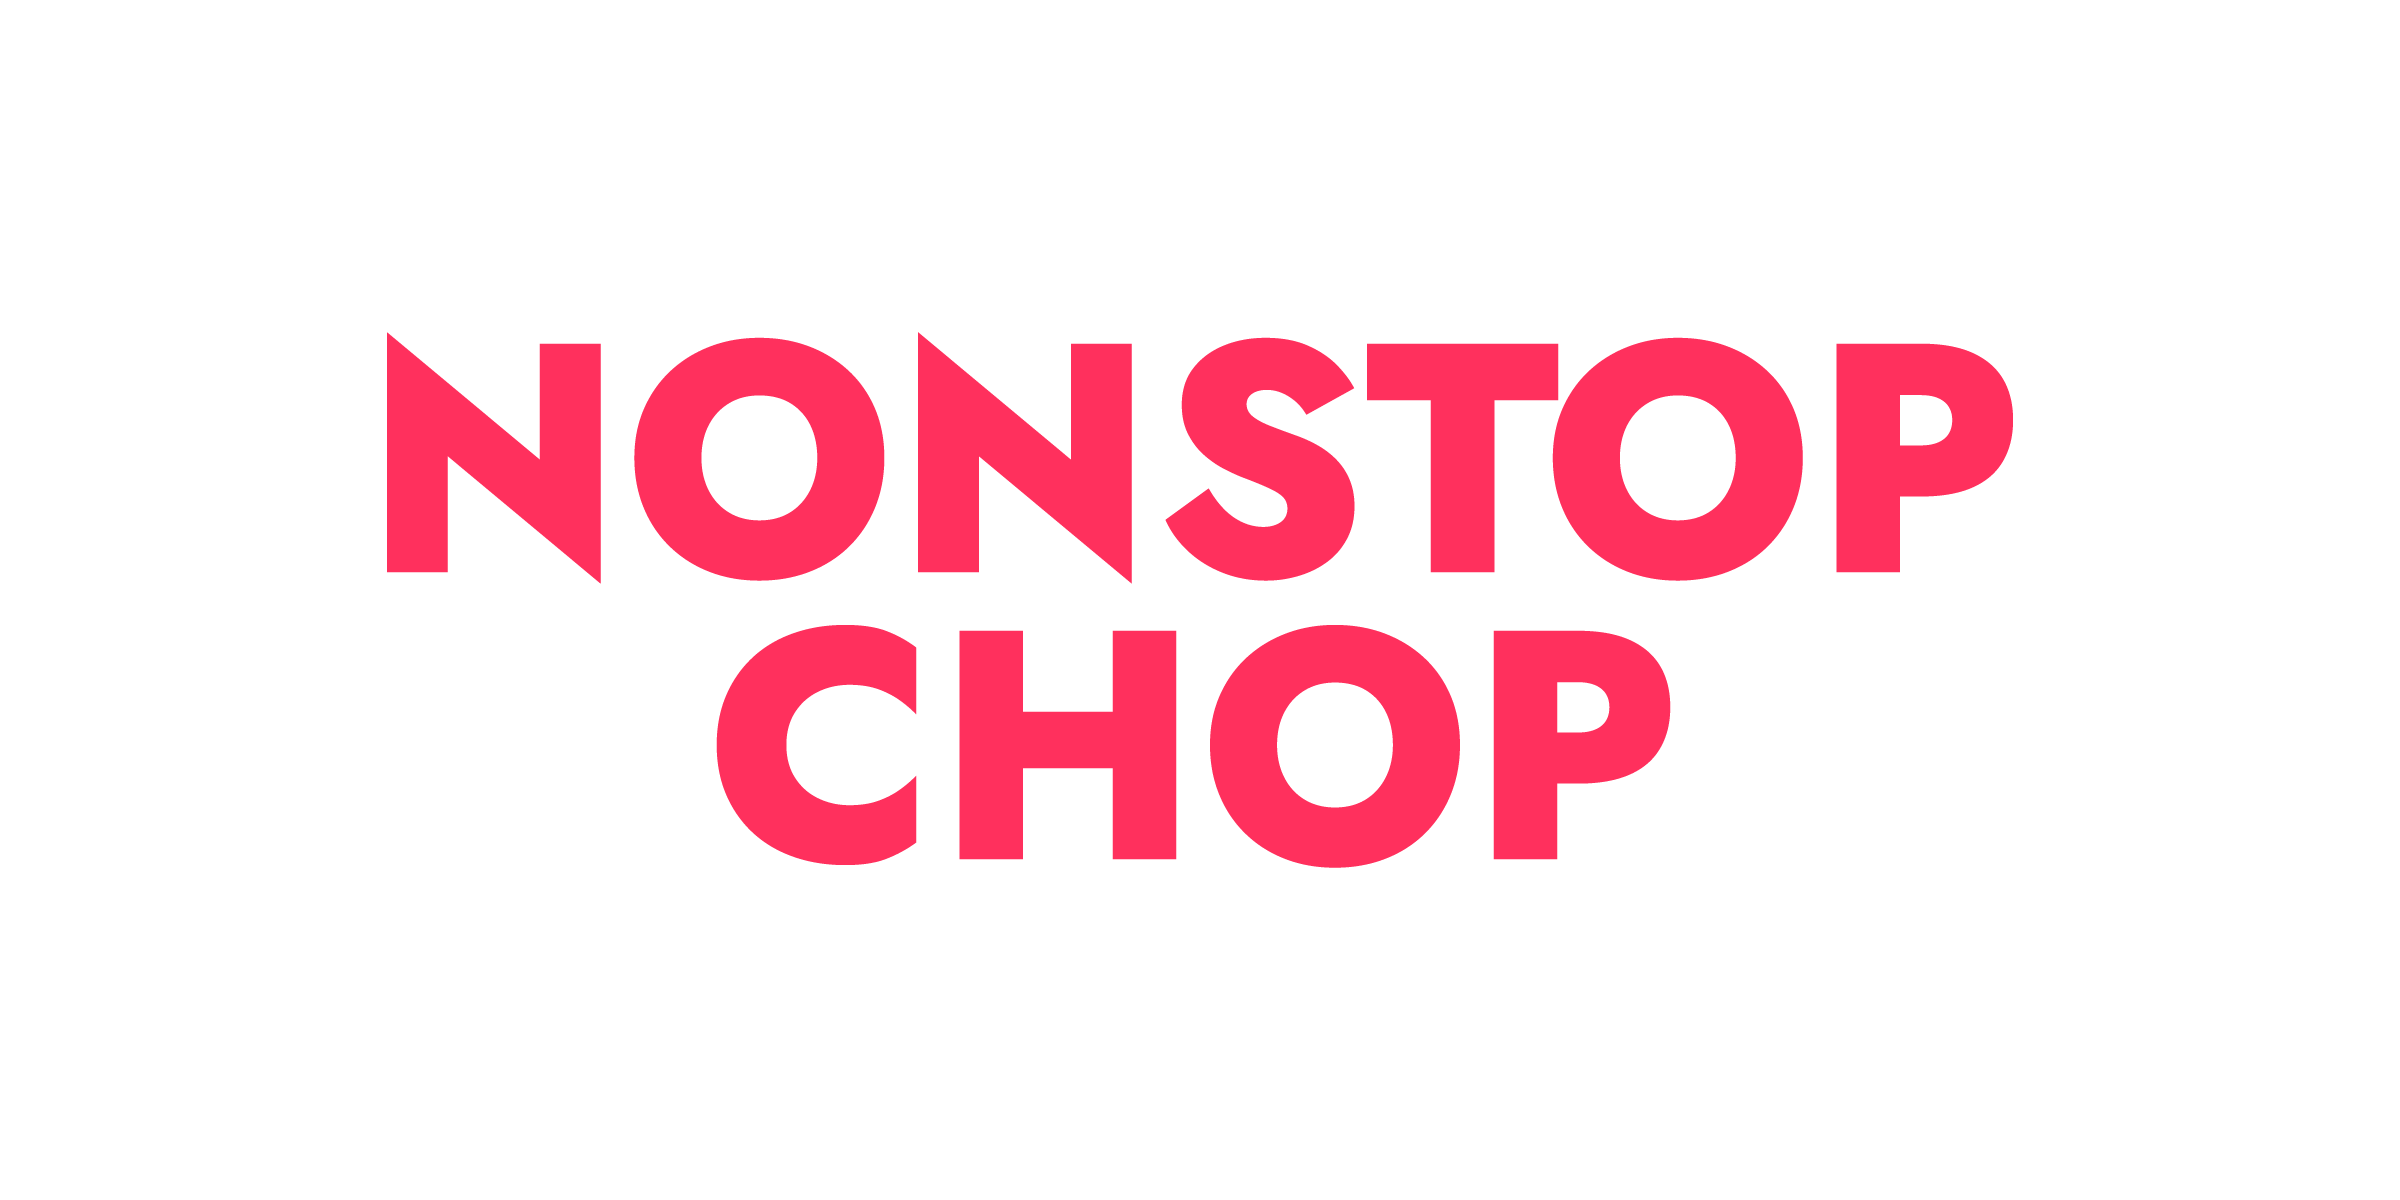 Nonstop Chop